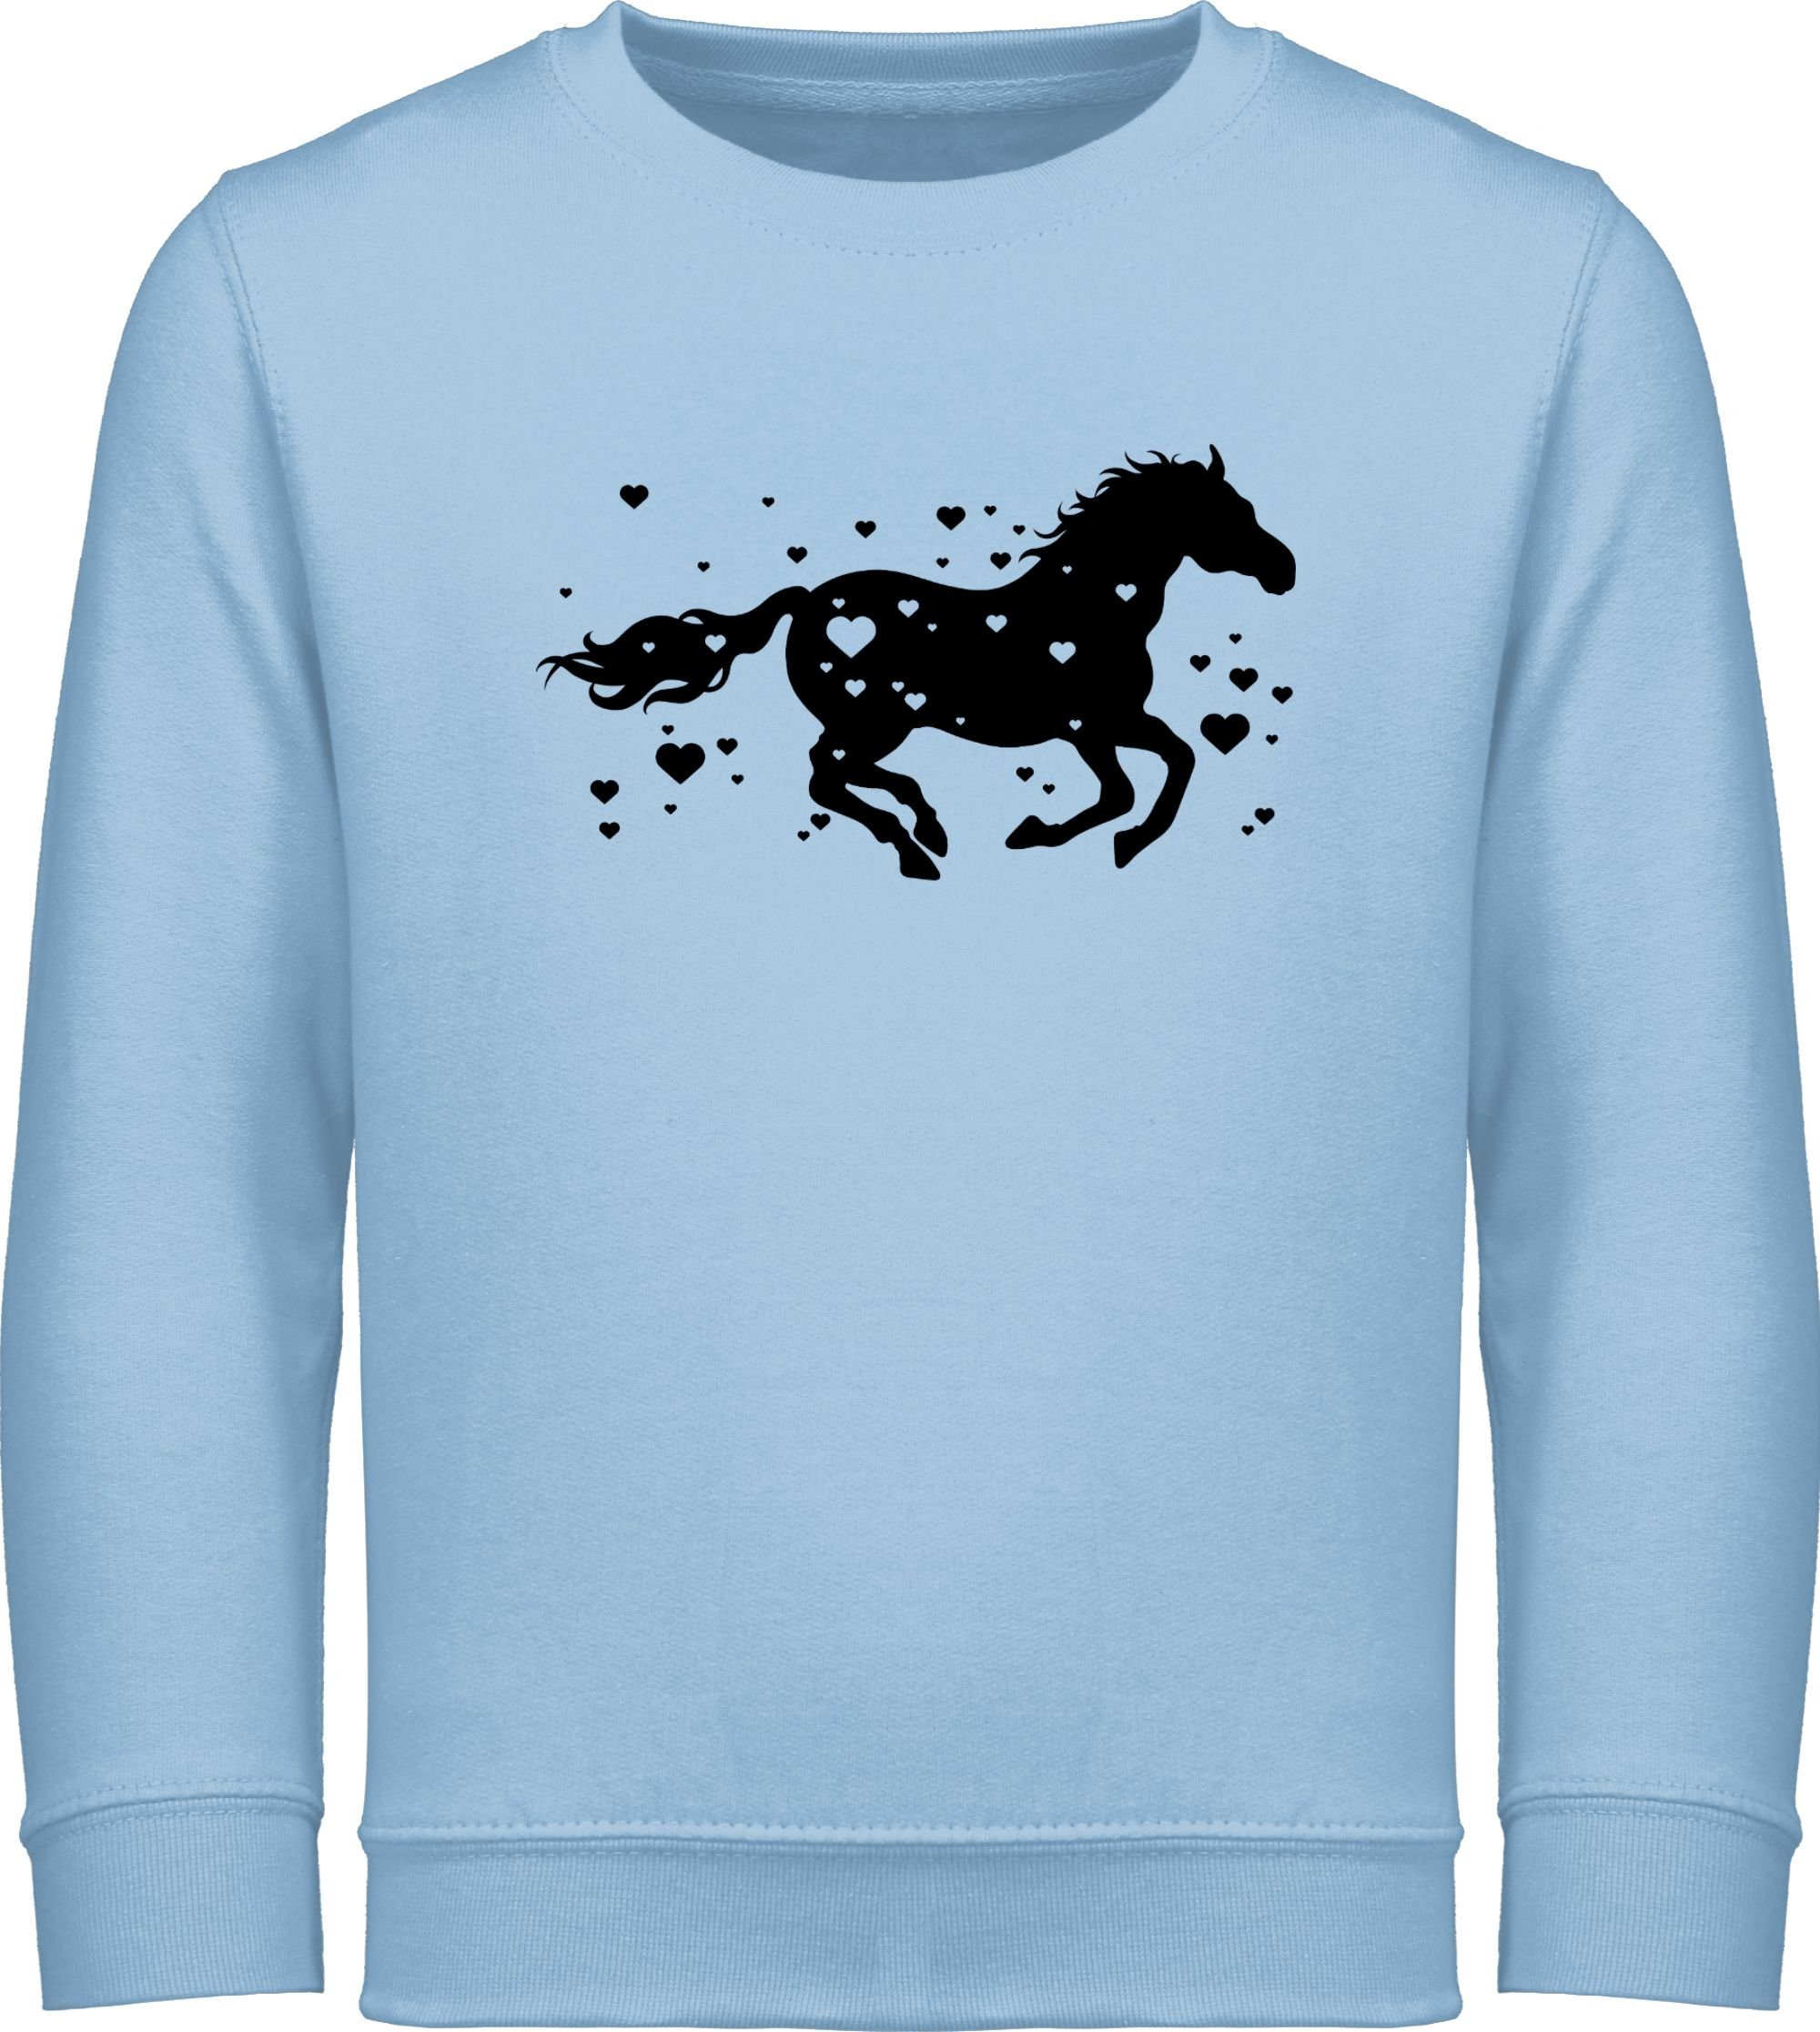 Pferde Shirtracer 2 Hellblau Sweatshirt Reiten Pferd Laufendes Pferd